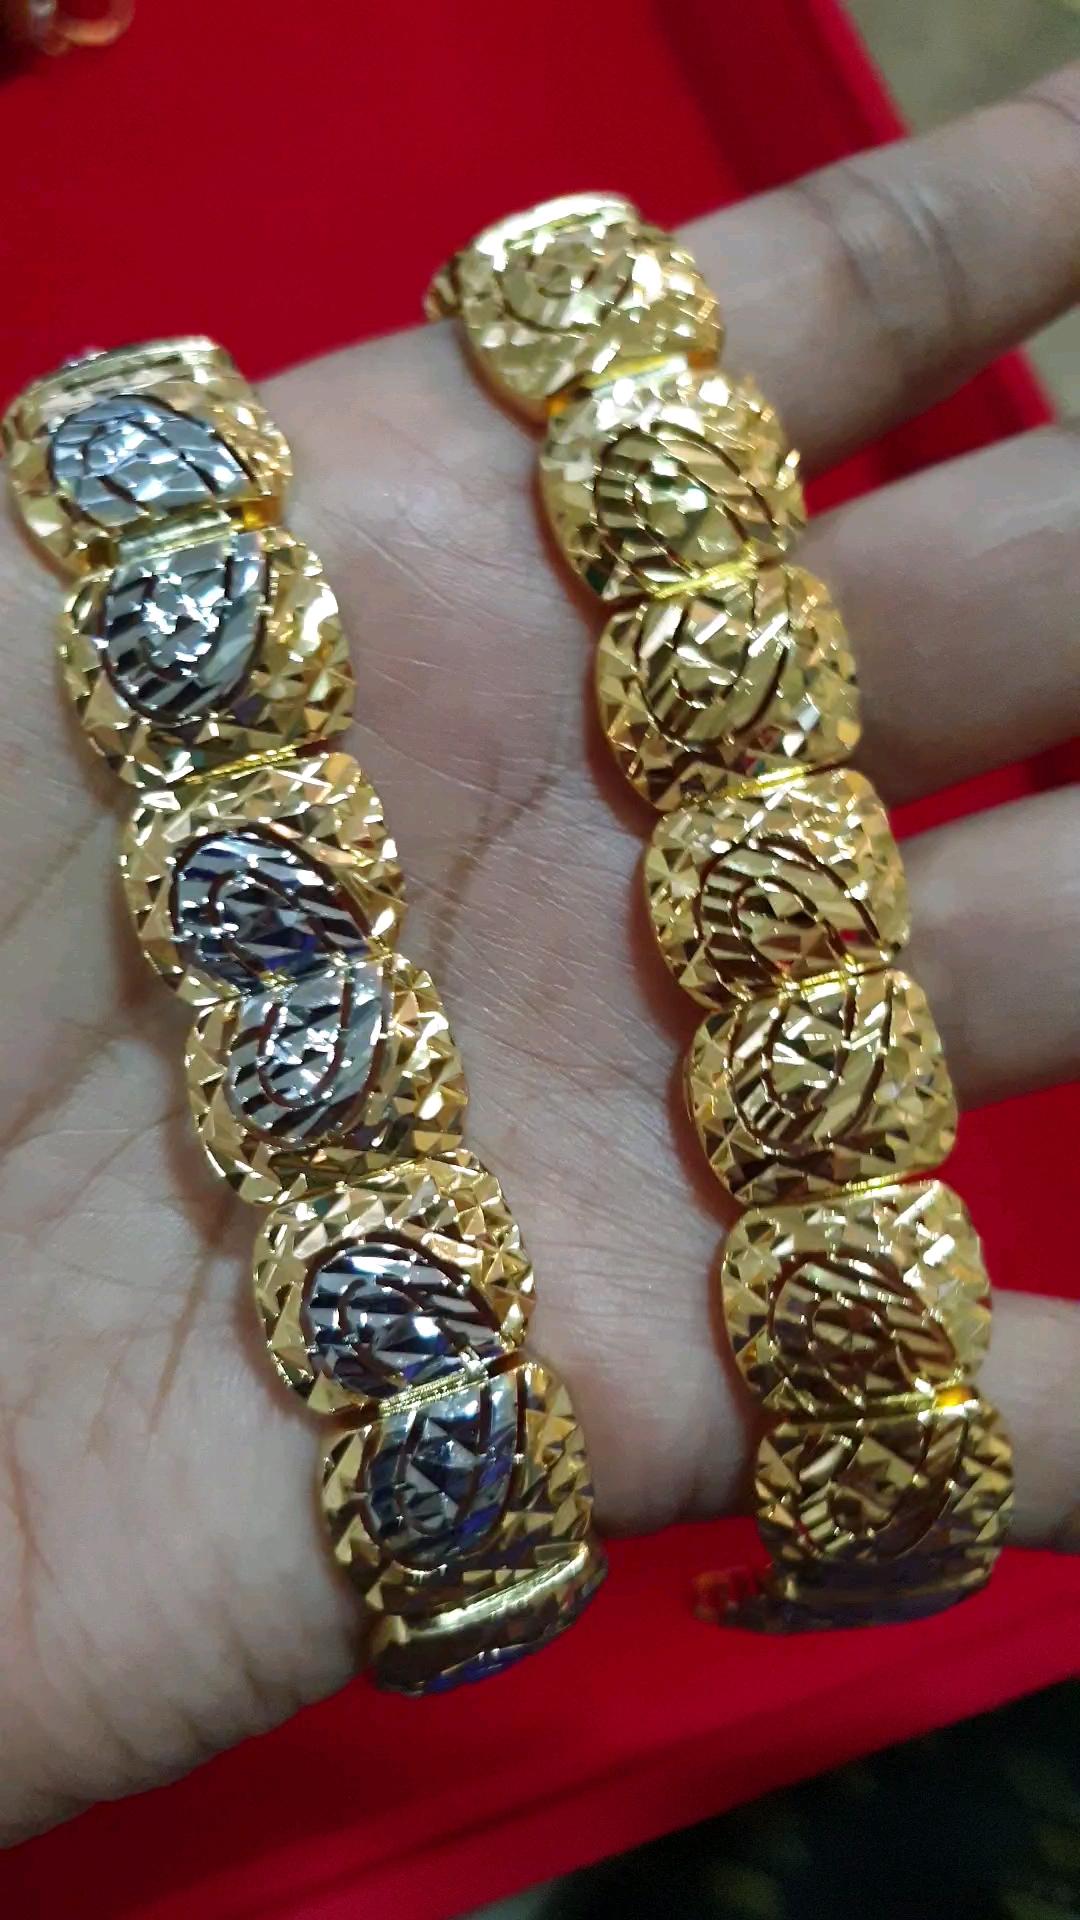 Cincin Pulut Dakap 916 - Bangle pulut dakap dewasa emas 916 tulen